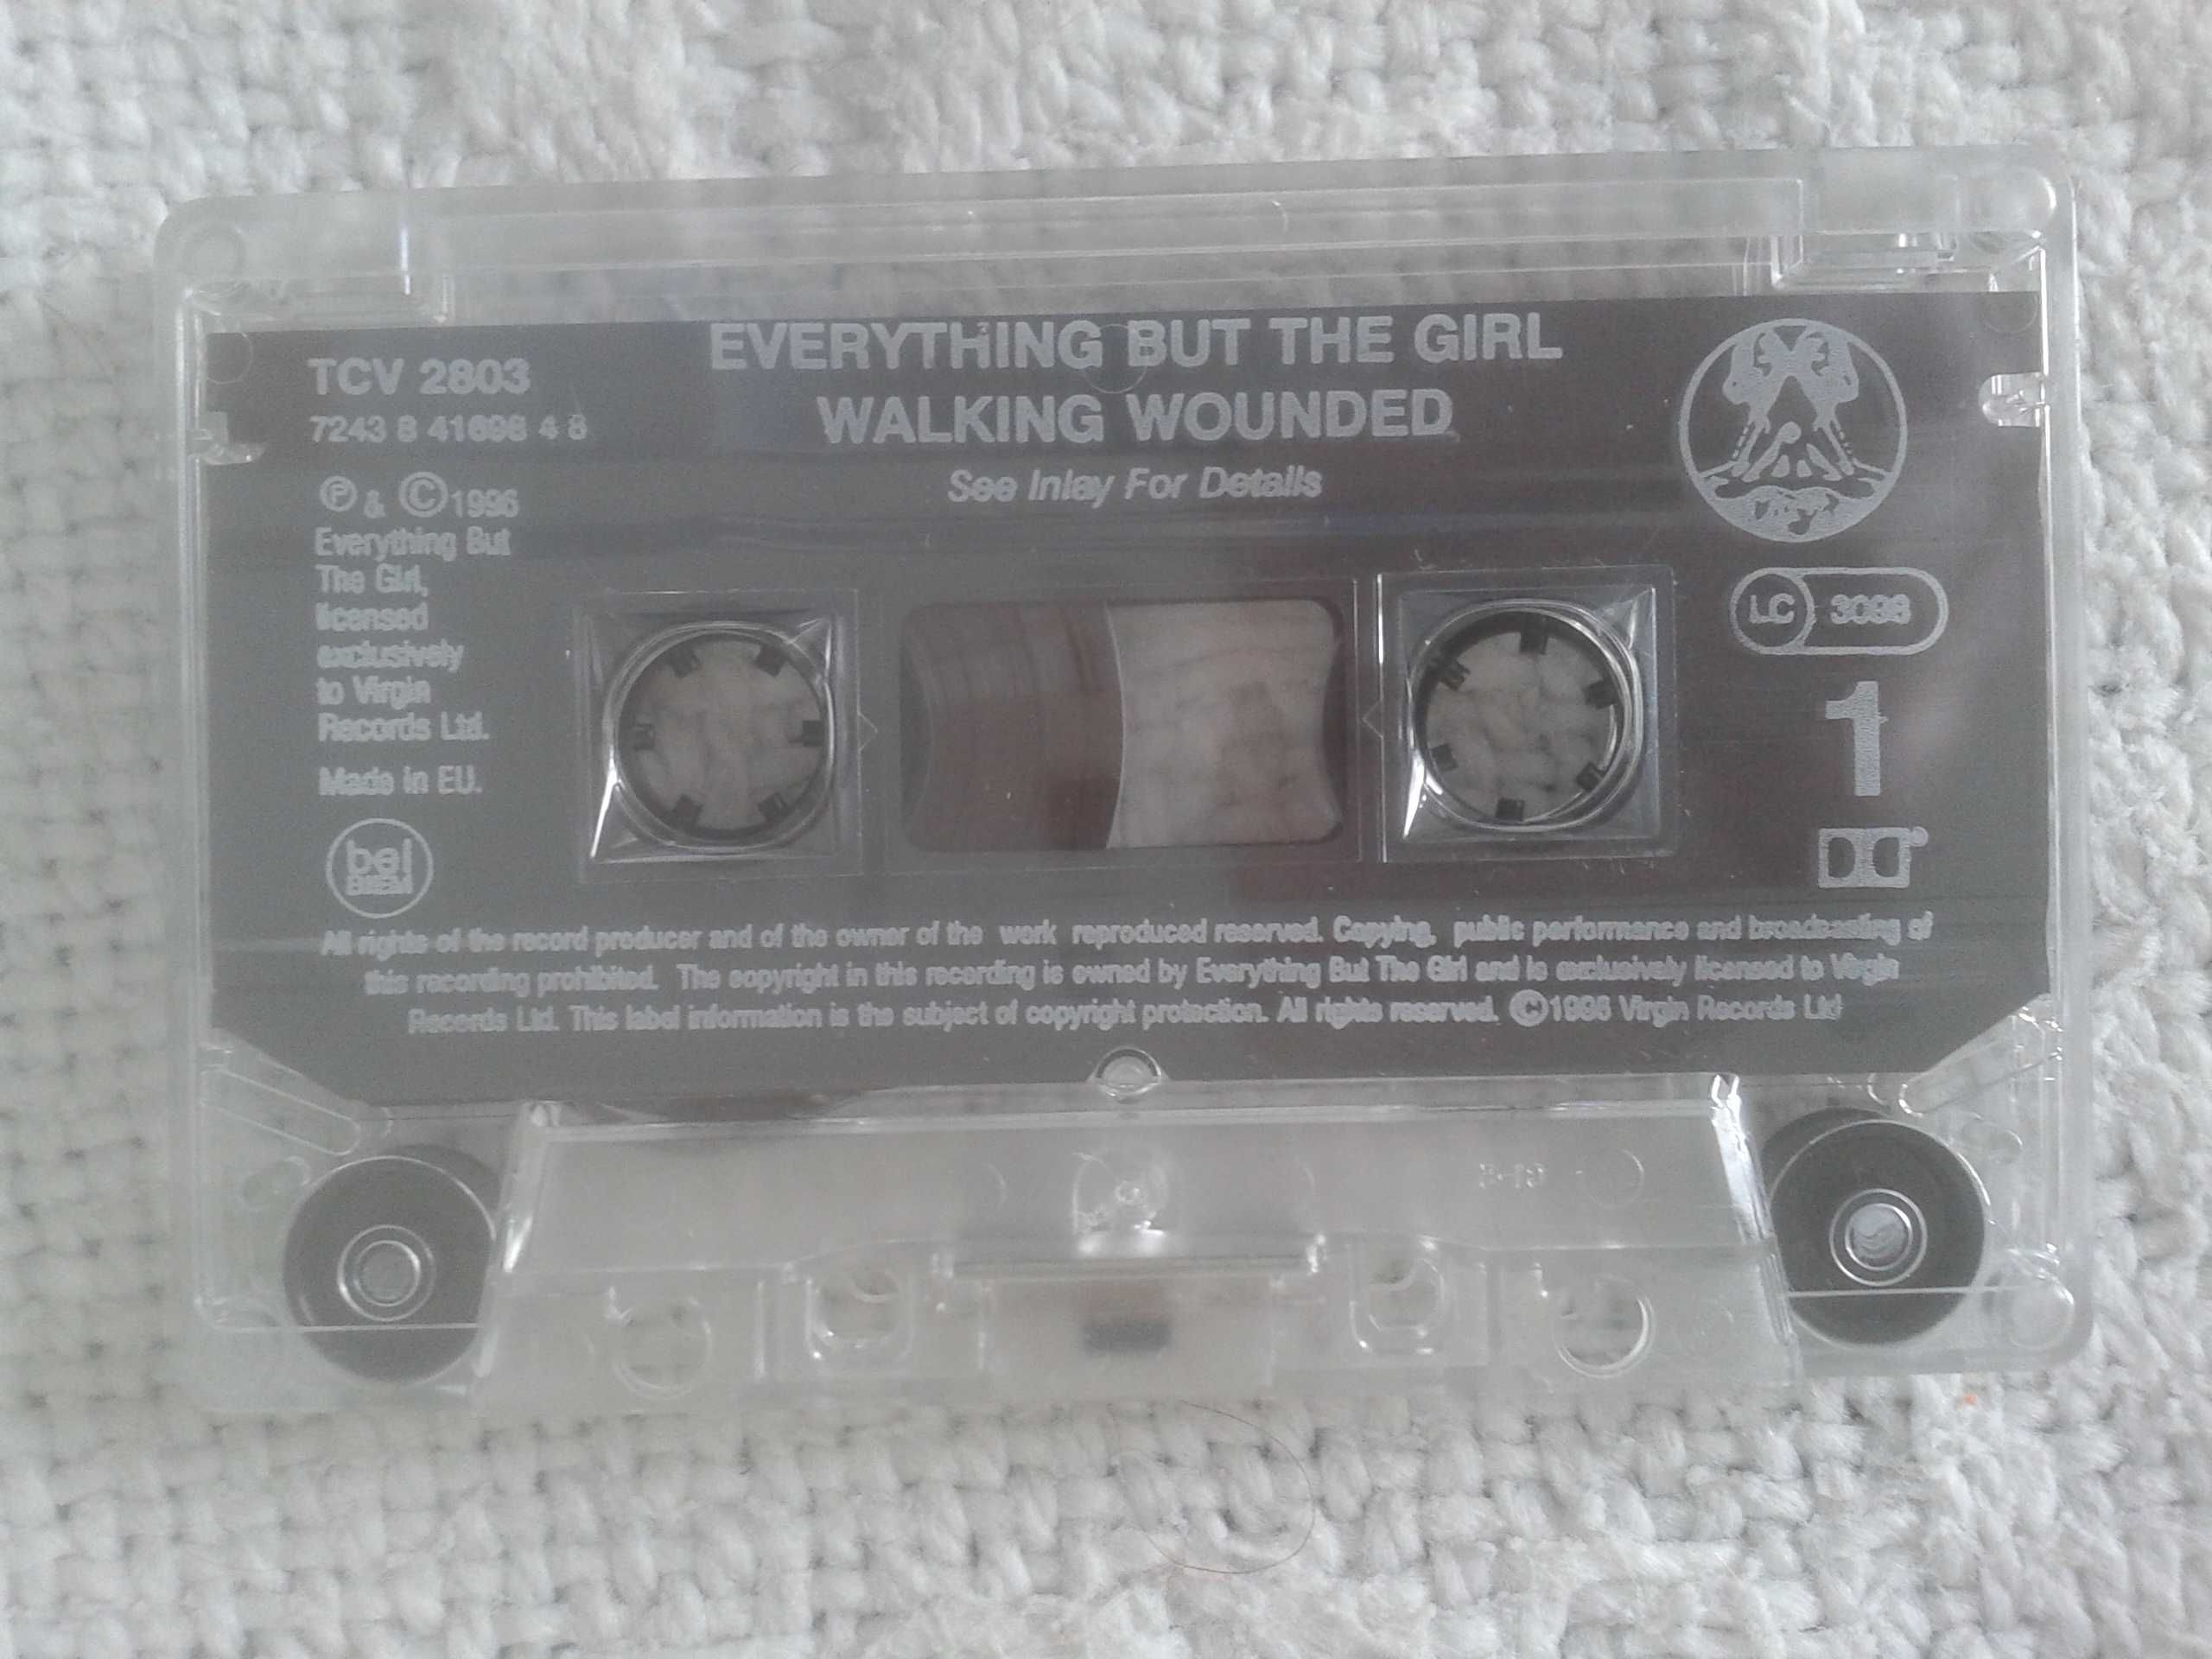 Sprzedam oryginalną kasetę magnetofonową Everything But The Girl